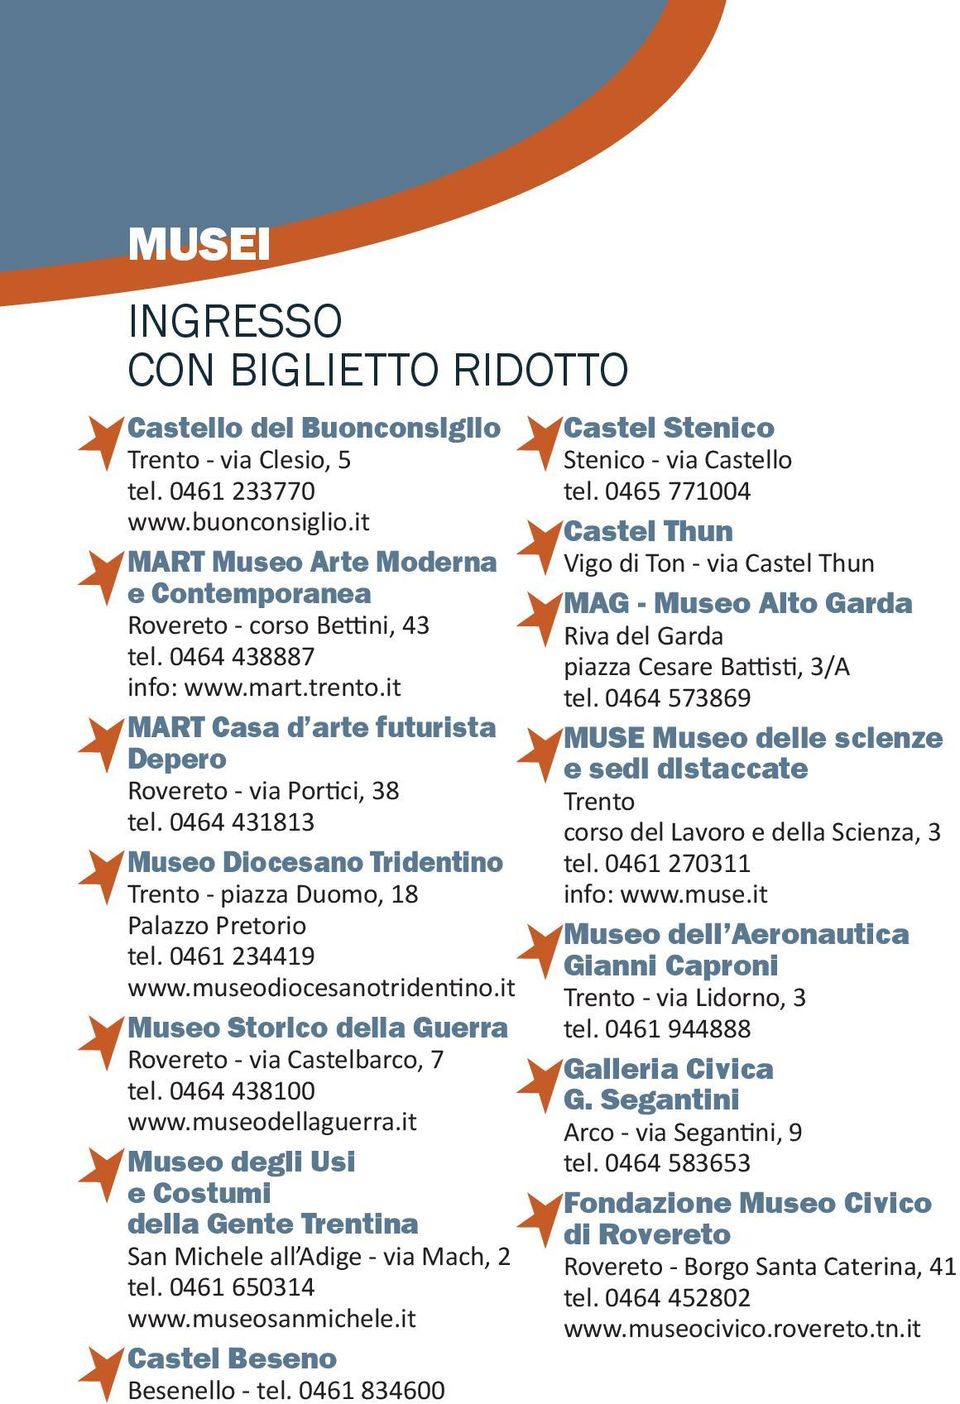 0461 234419 www.museodiocesanotridentino.it Museo Storico della Guerra Rovereto - via Castelbarco, 7 tel. 0464 438100 www.museodellaguerra.